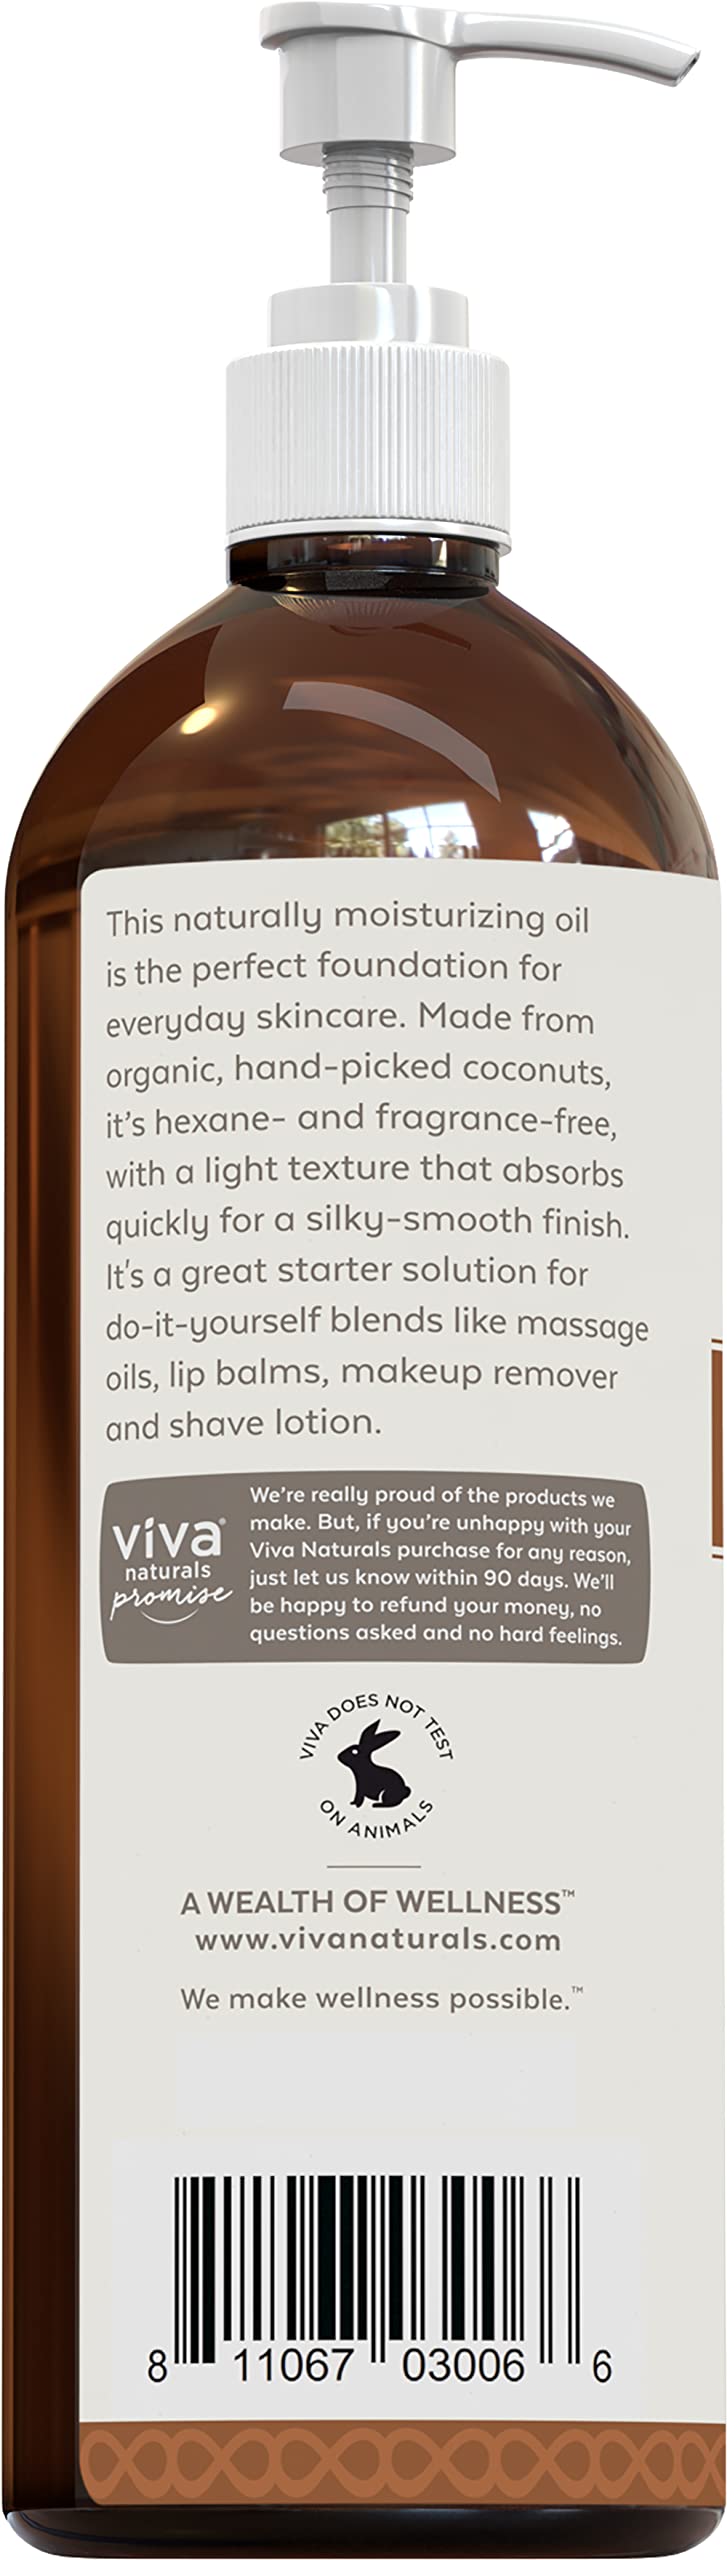 Viva Naturals Organic Fractionated Coconut Oil 16oz- Moisturizing Hair & Body Oil, Carrier Oil